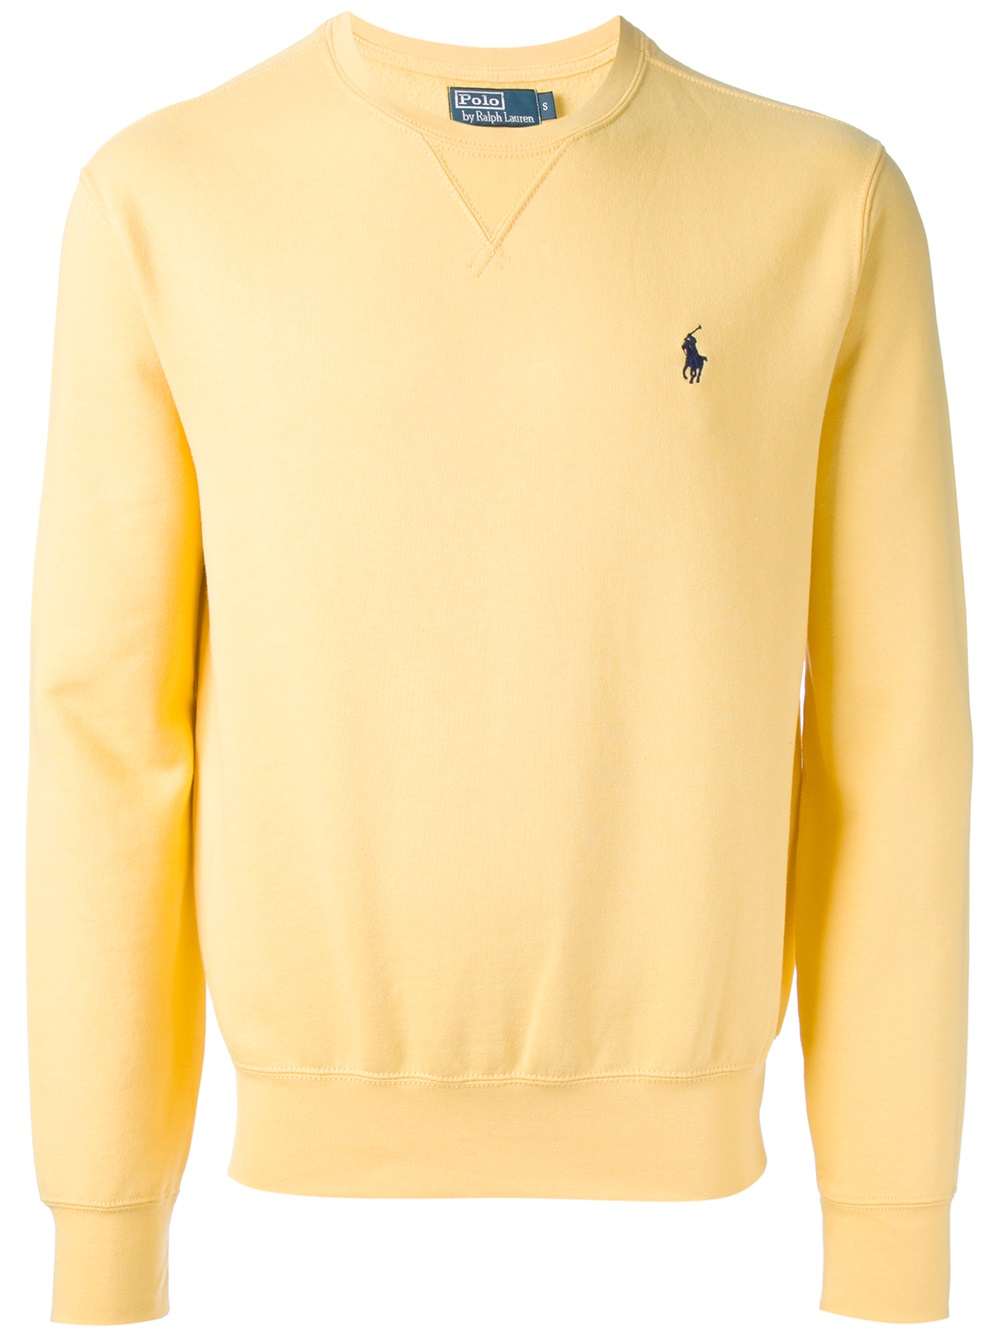 Polo Ralph Lauren Crew Neck Sweatshirt in Yellow & Orange (Yellow) for Men  - Lyst